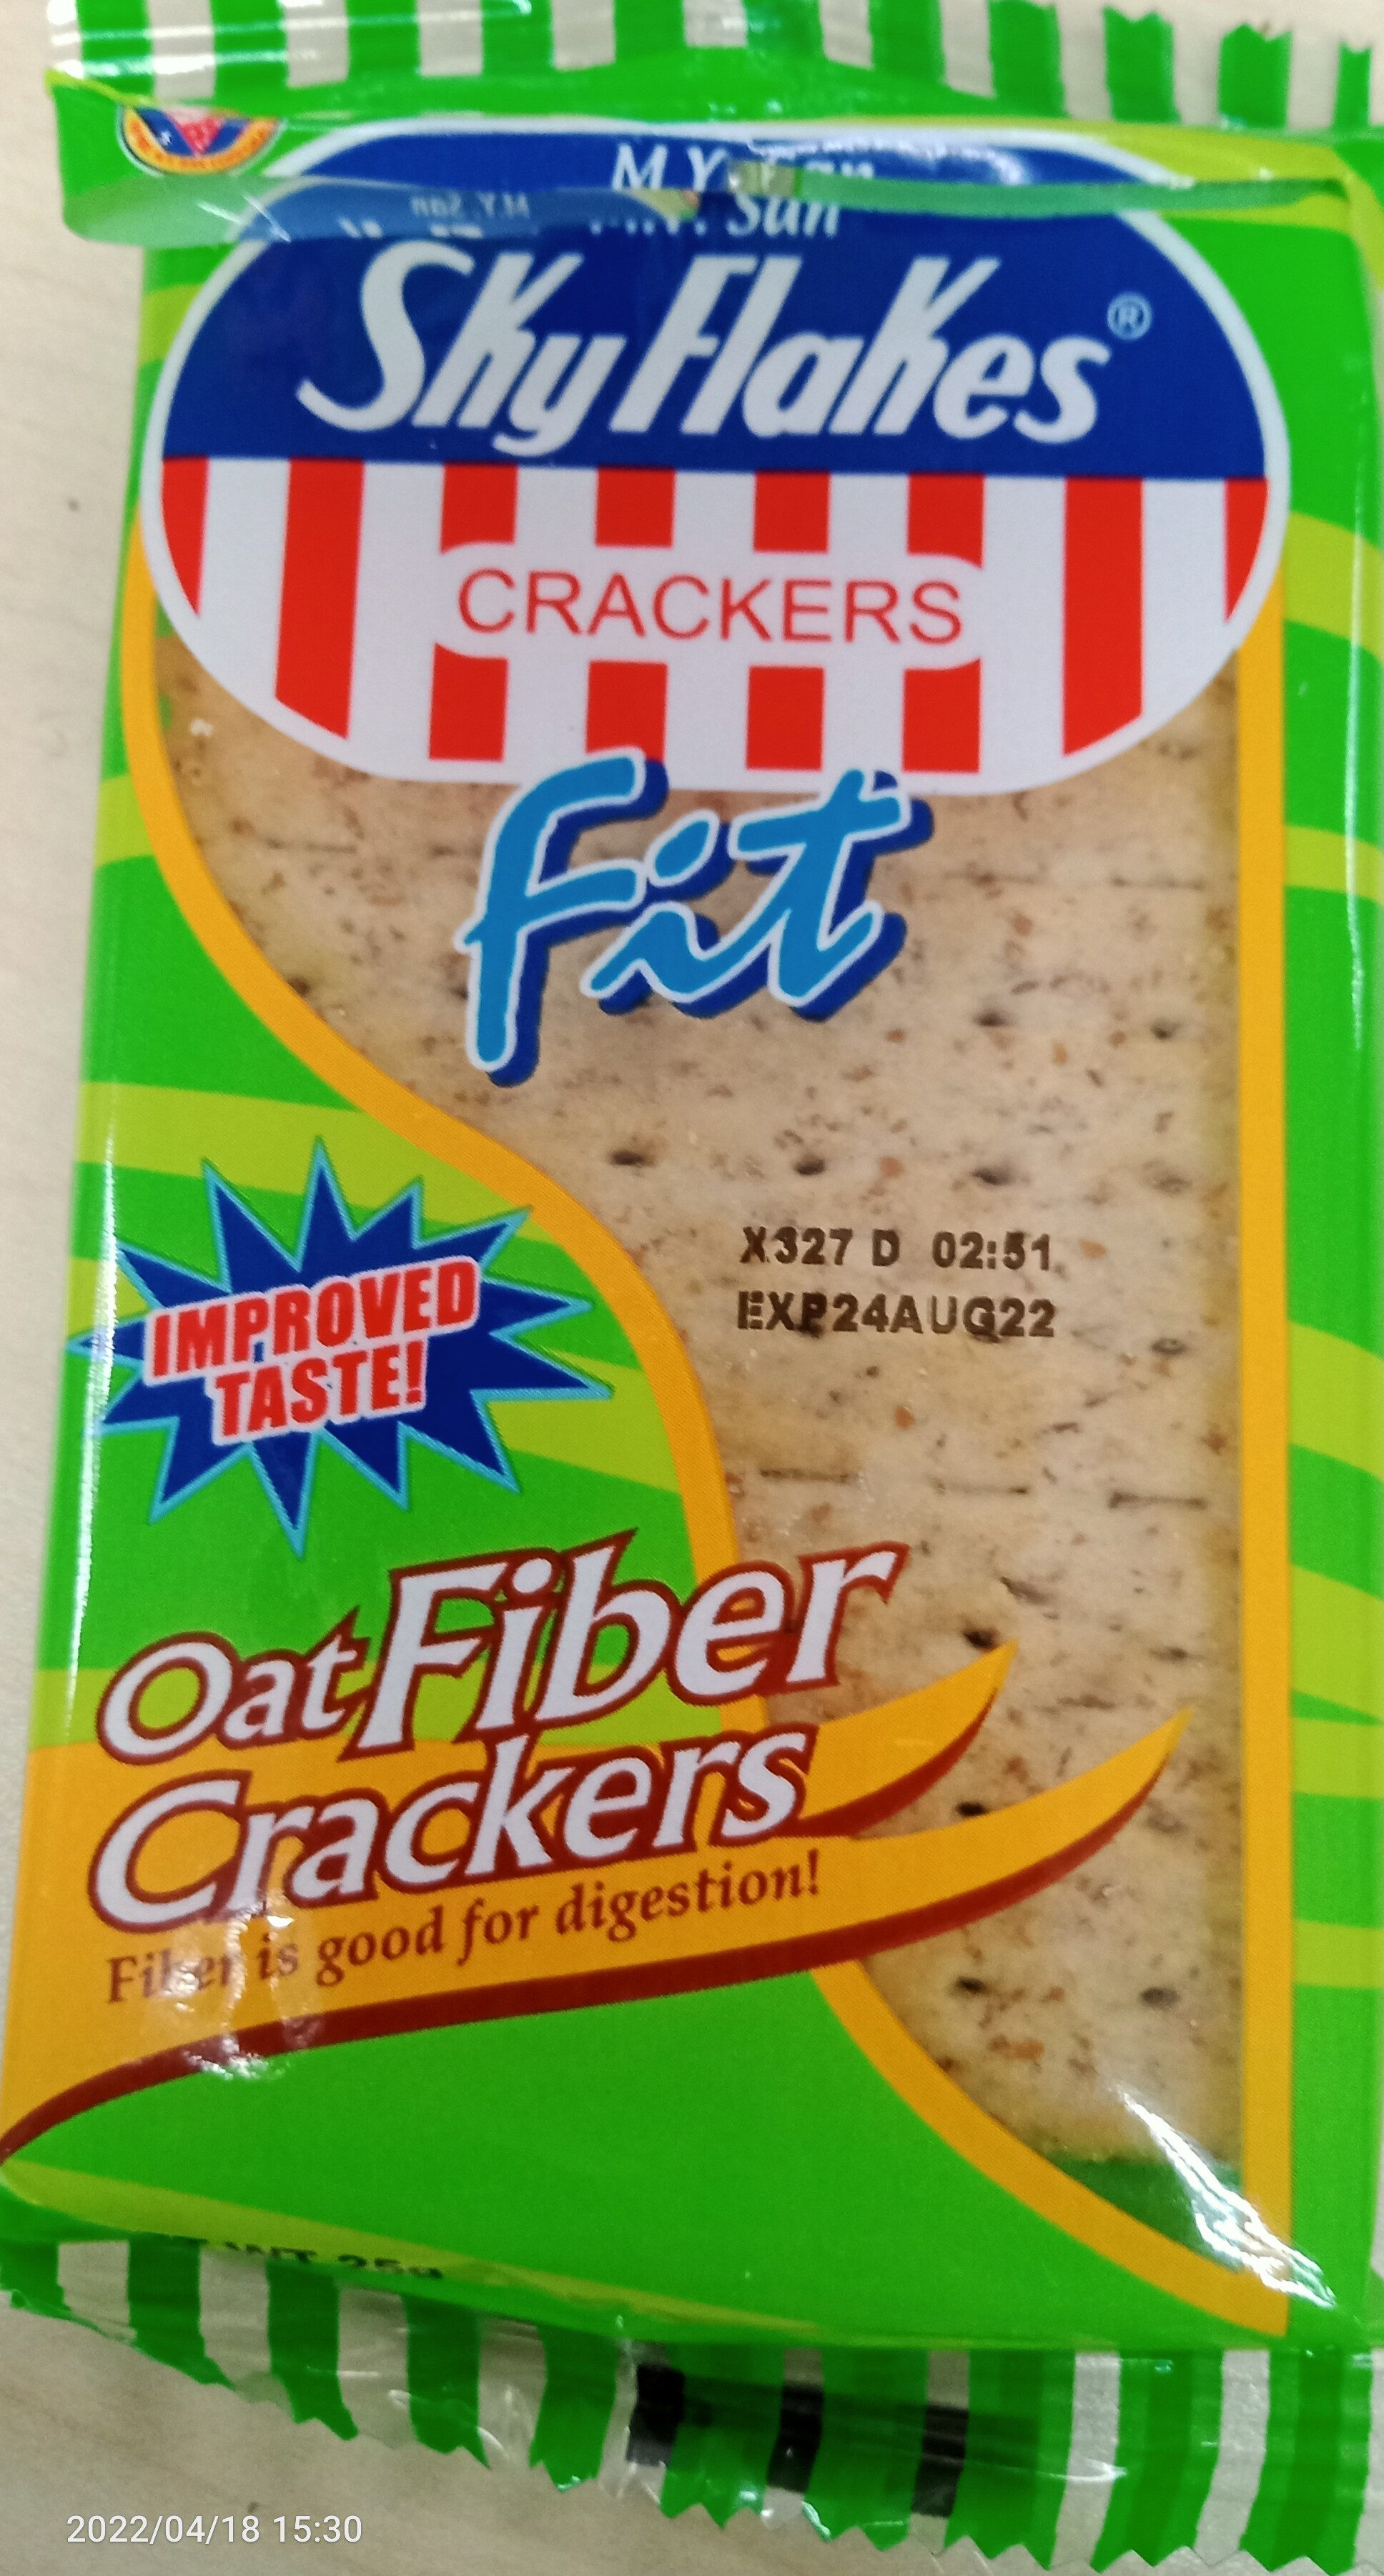 Skyflakes Oat fiber cracker - Product